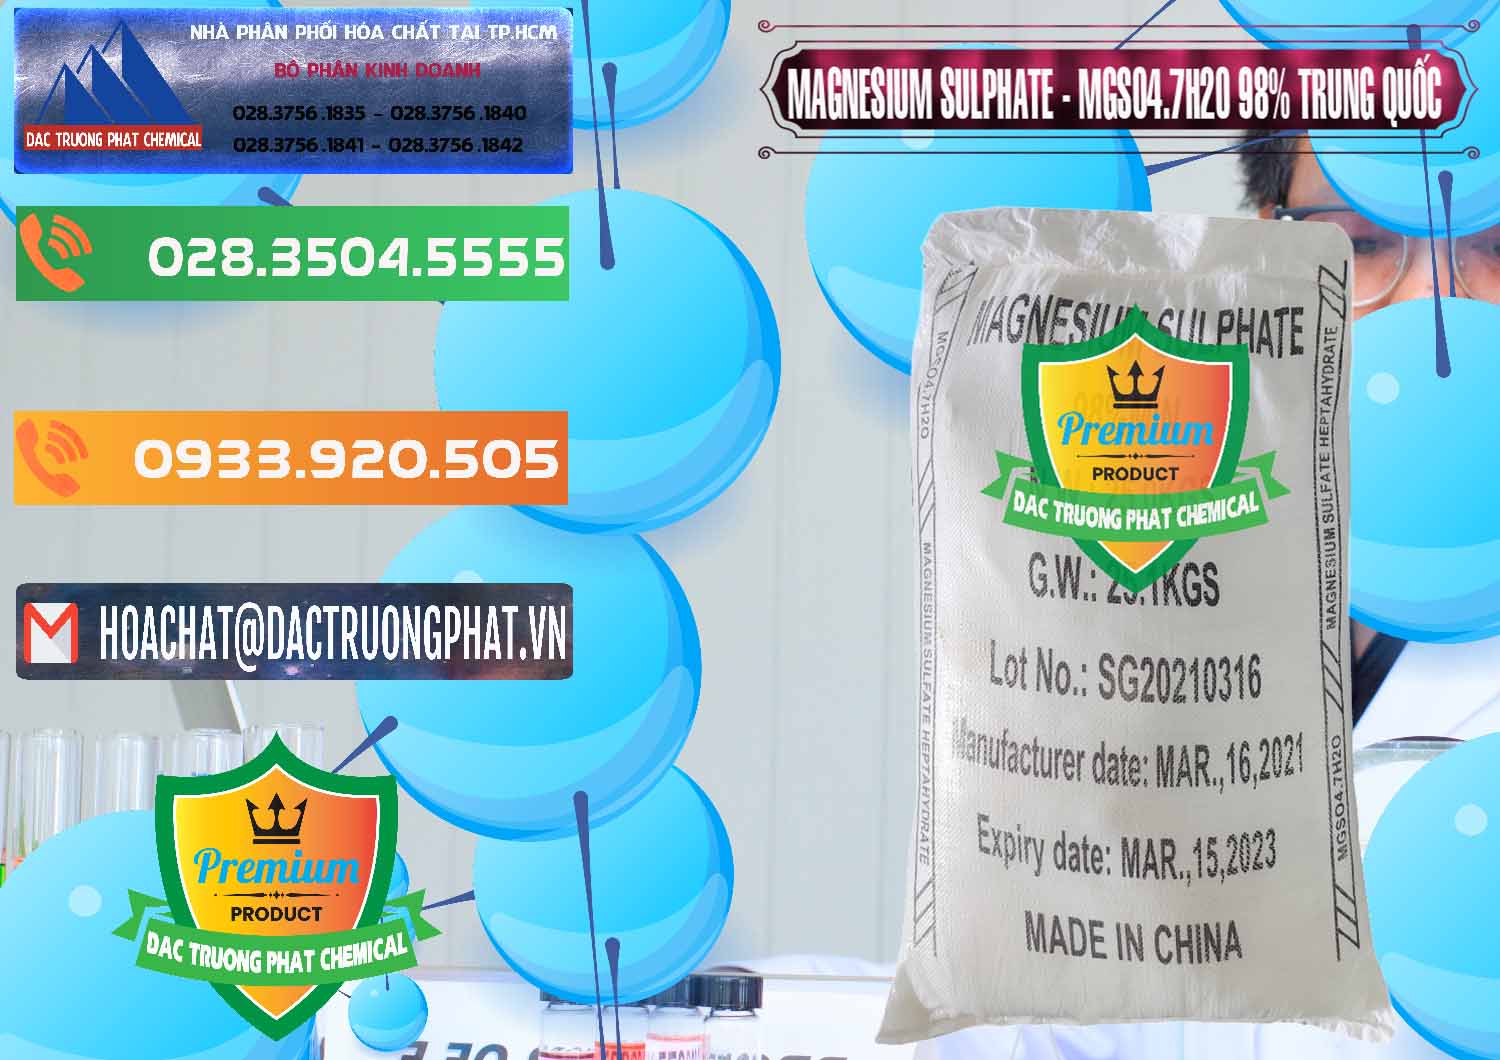 Nơi bán & cung cấp MGSO4.7H2O – Magnesium Sulphate 98% Trung Quốc China - 0229 - Nhà cung cấp _ nhập khẩu hóa chất tại TP.HCM - hoachatxulynuoc.com.vn